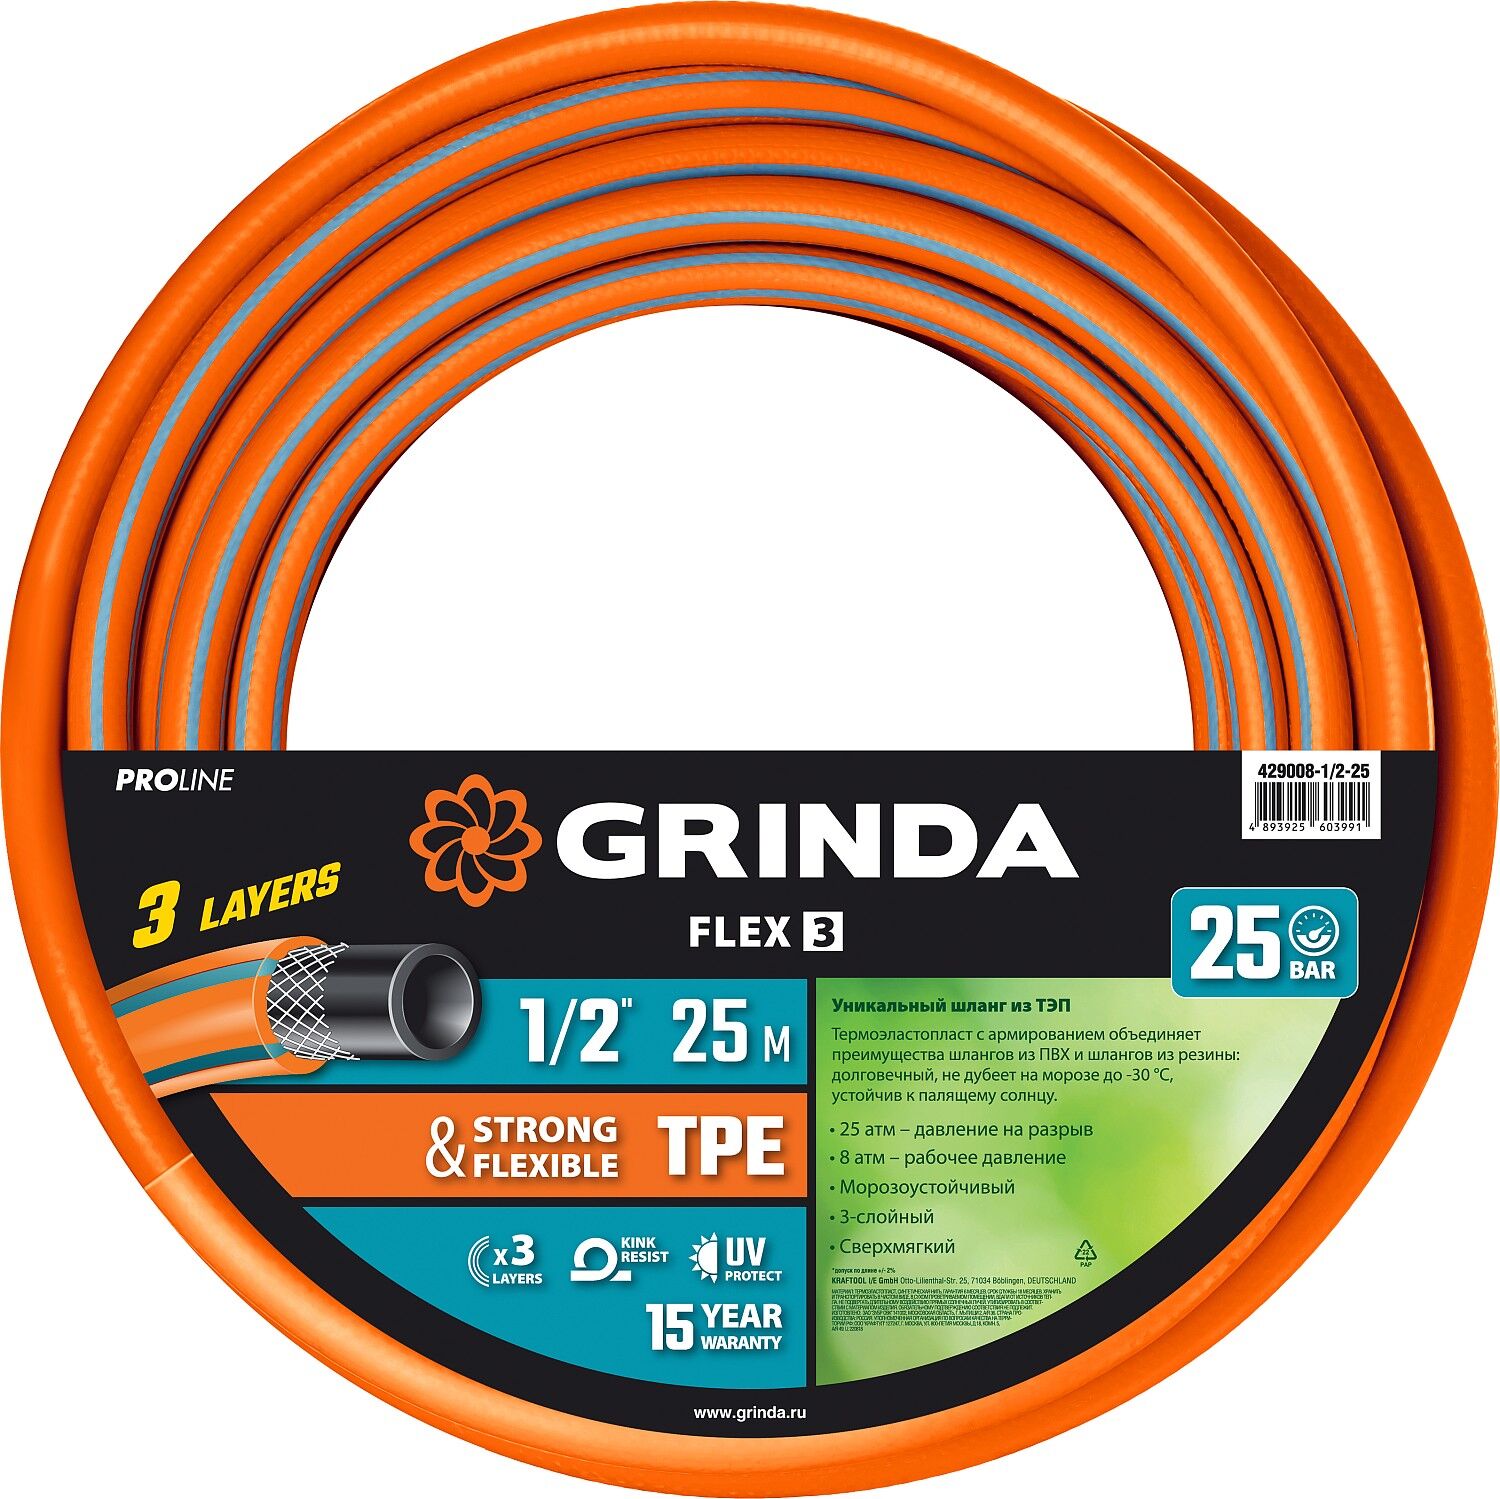 GRINDA FLEX 3, 1/2″, 25 м, 25 атм, из термоэластопласта, трёхслойный, армированный, гибкий, поливочный шланг, PROLine (4